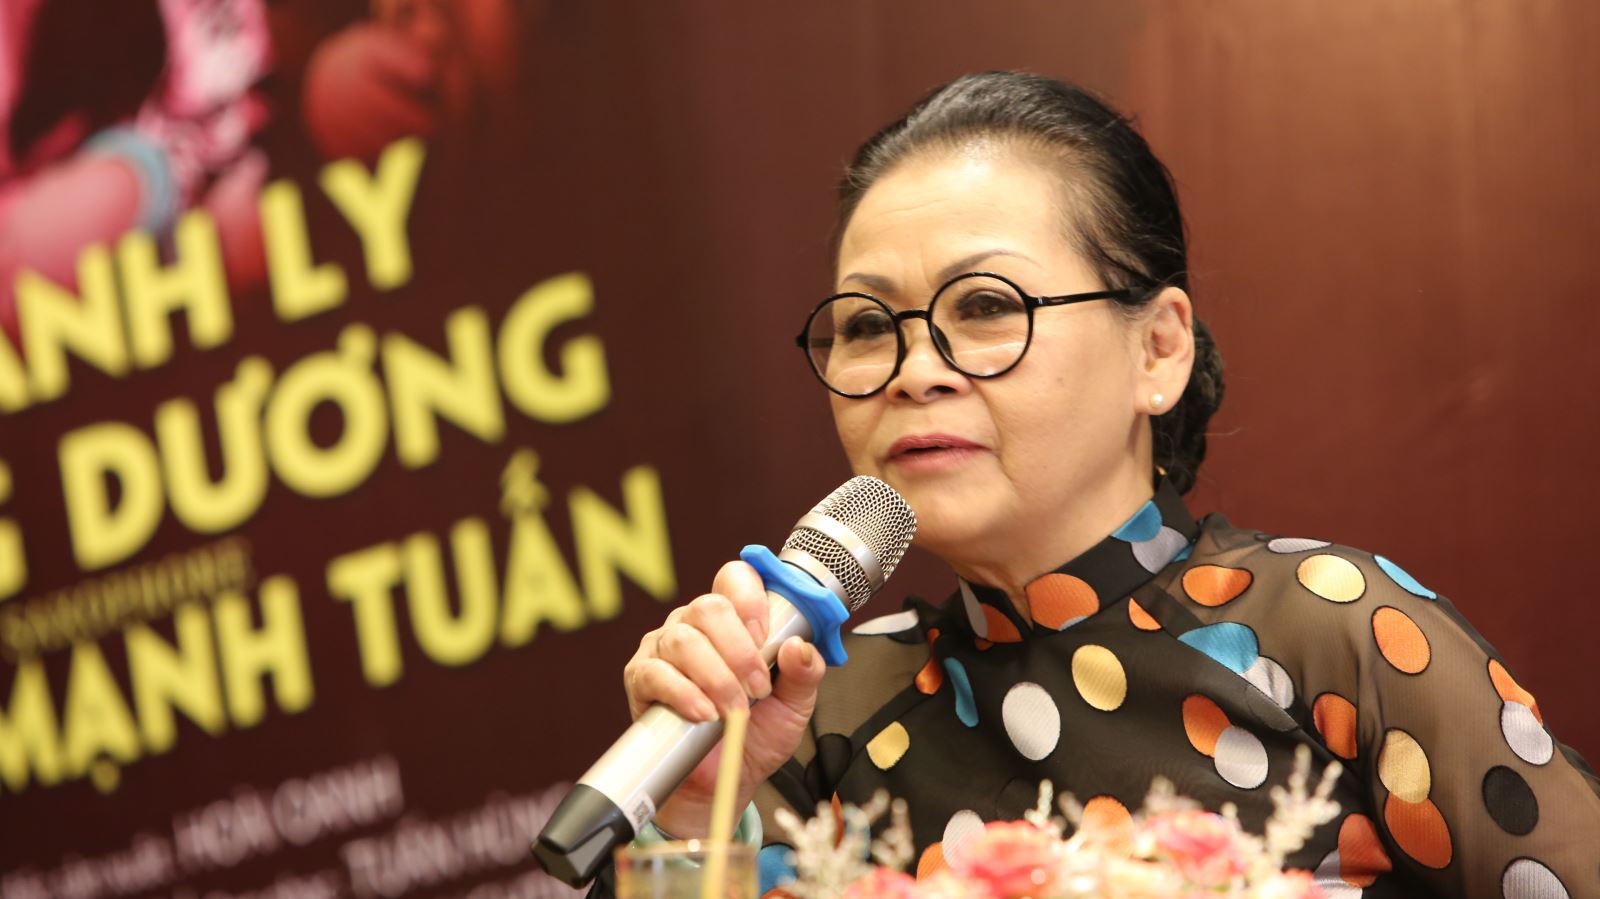 Danh ca Khánh Ly tiết lộ lý do không về dự tang lễ Trịnh Công Sơn